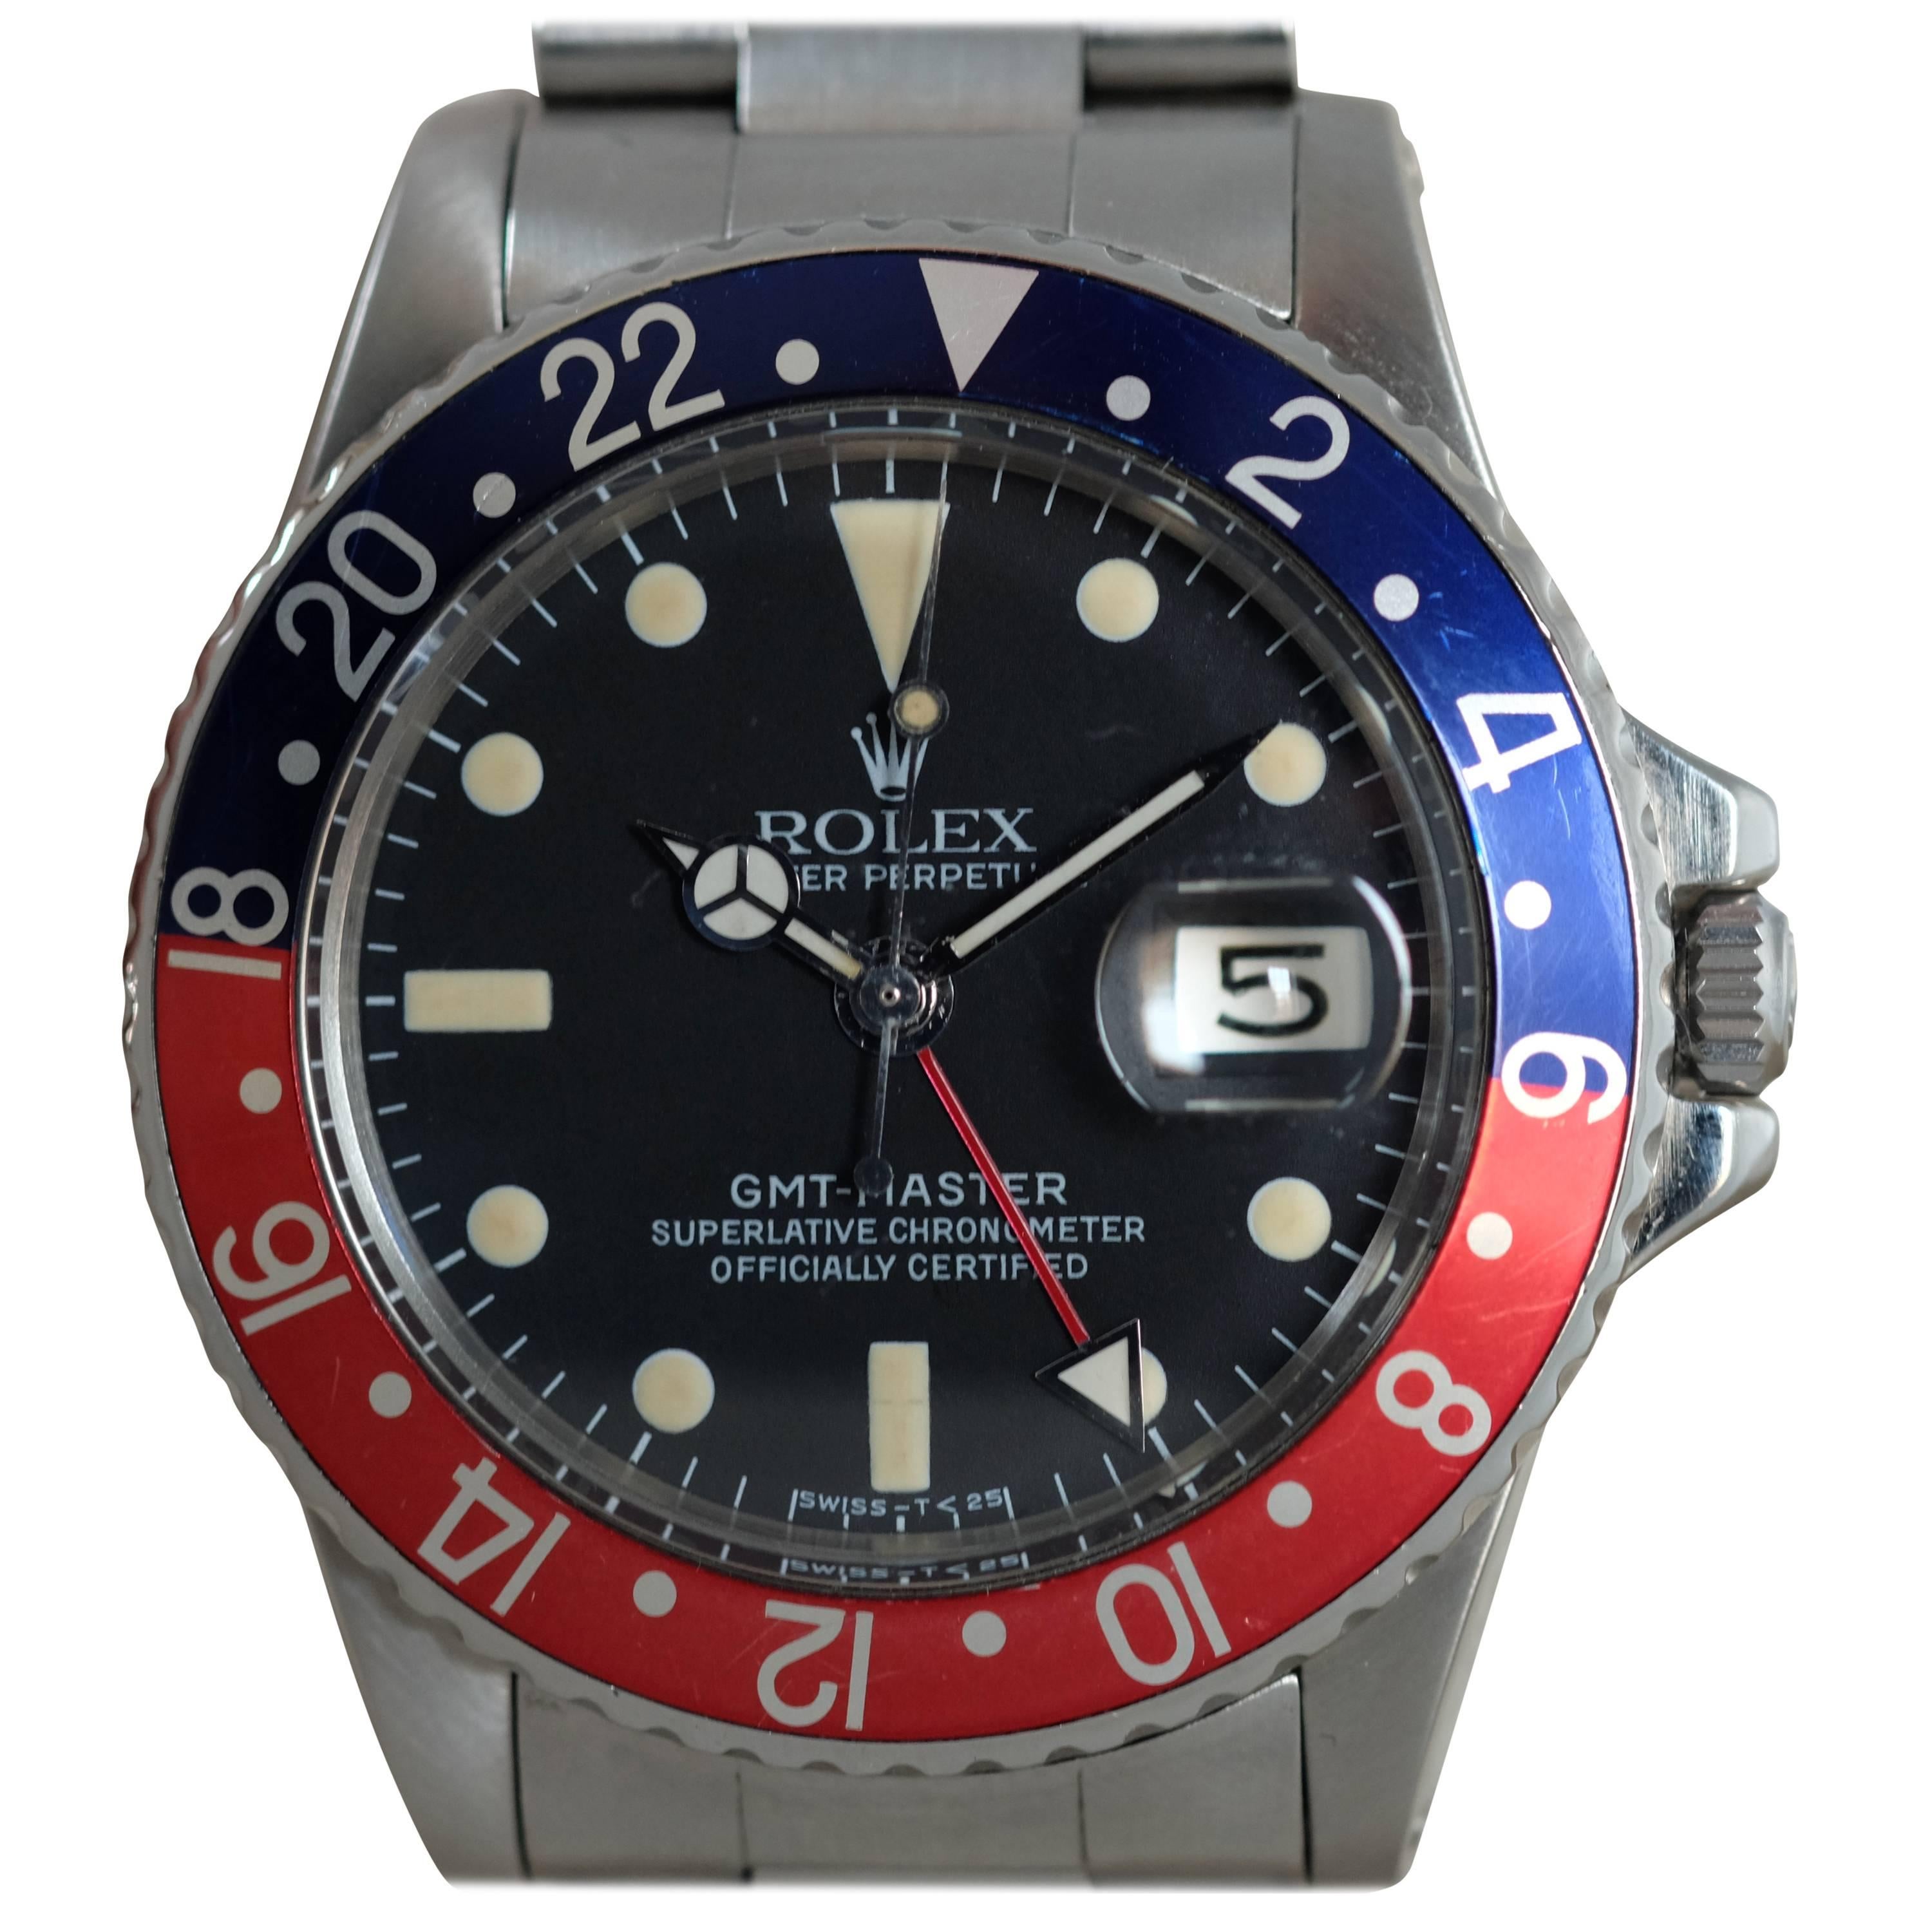 Rolex Stainless Steel GMT-Master Chronometer Wristwatch Ref 1675